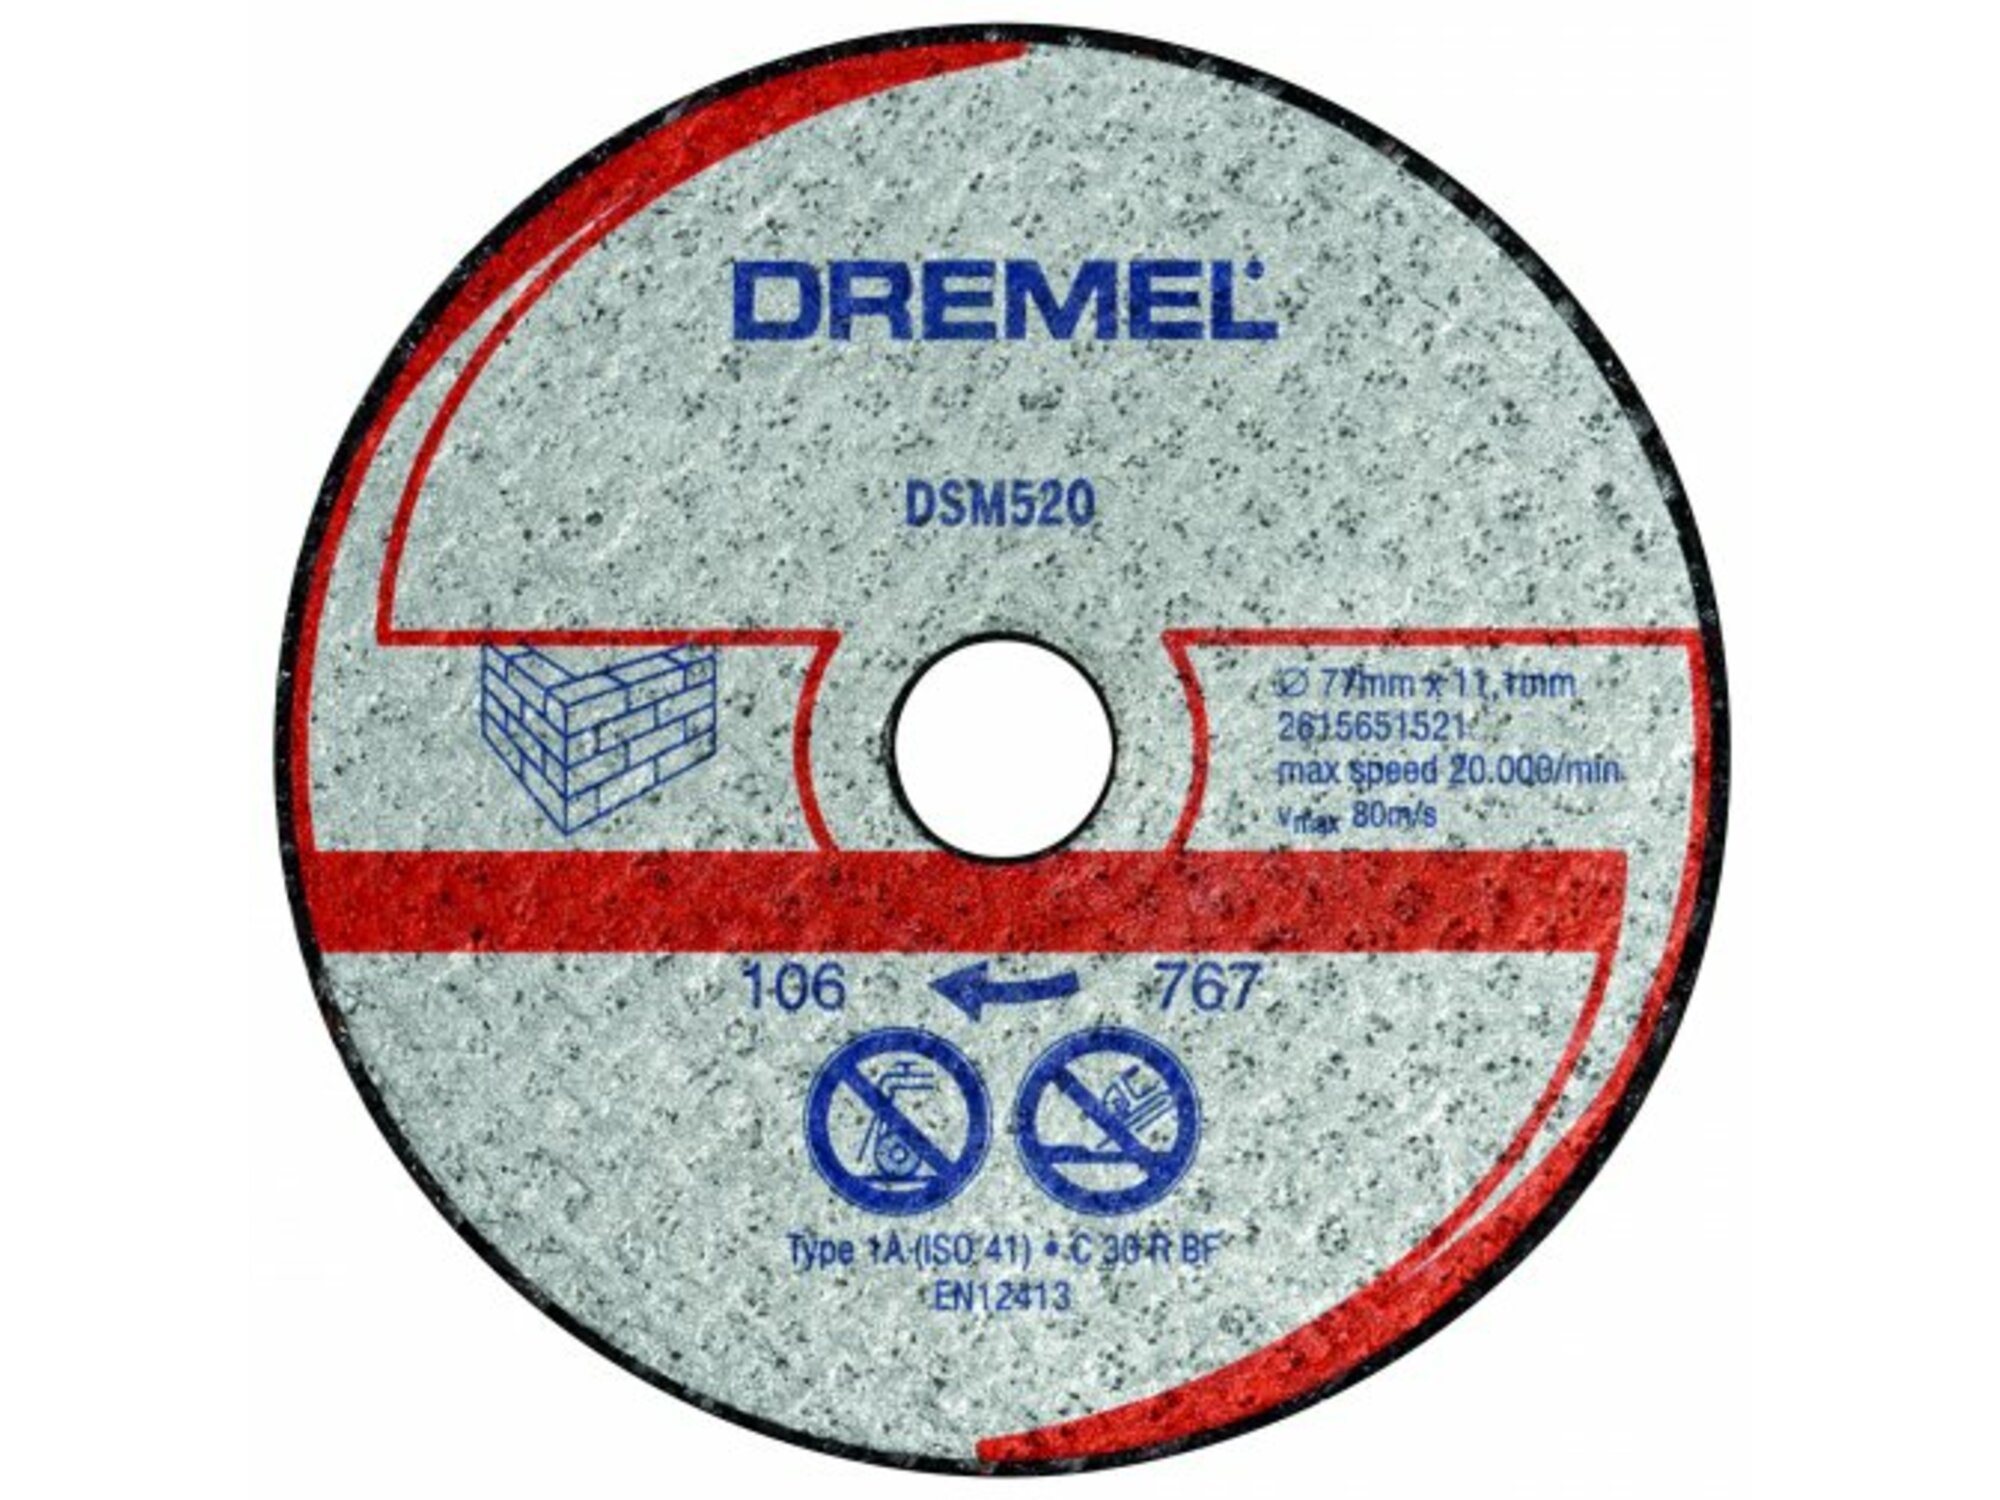 Dremel rezni disk DSM520 2615S520JA